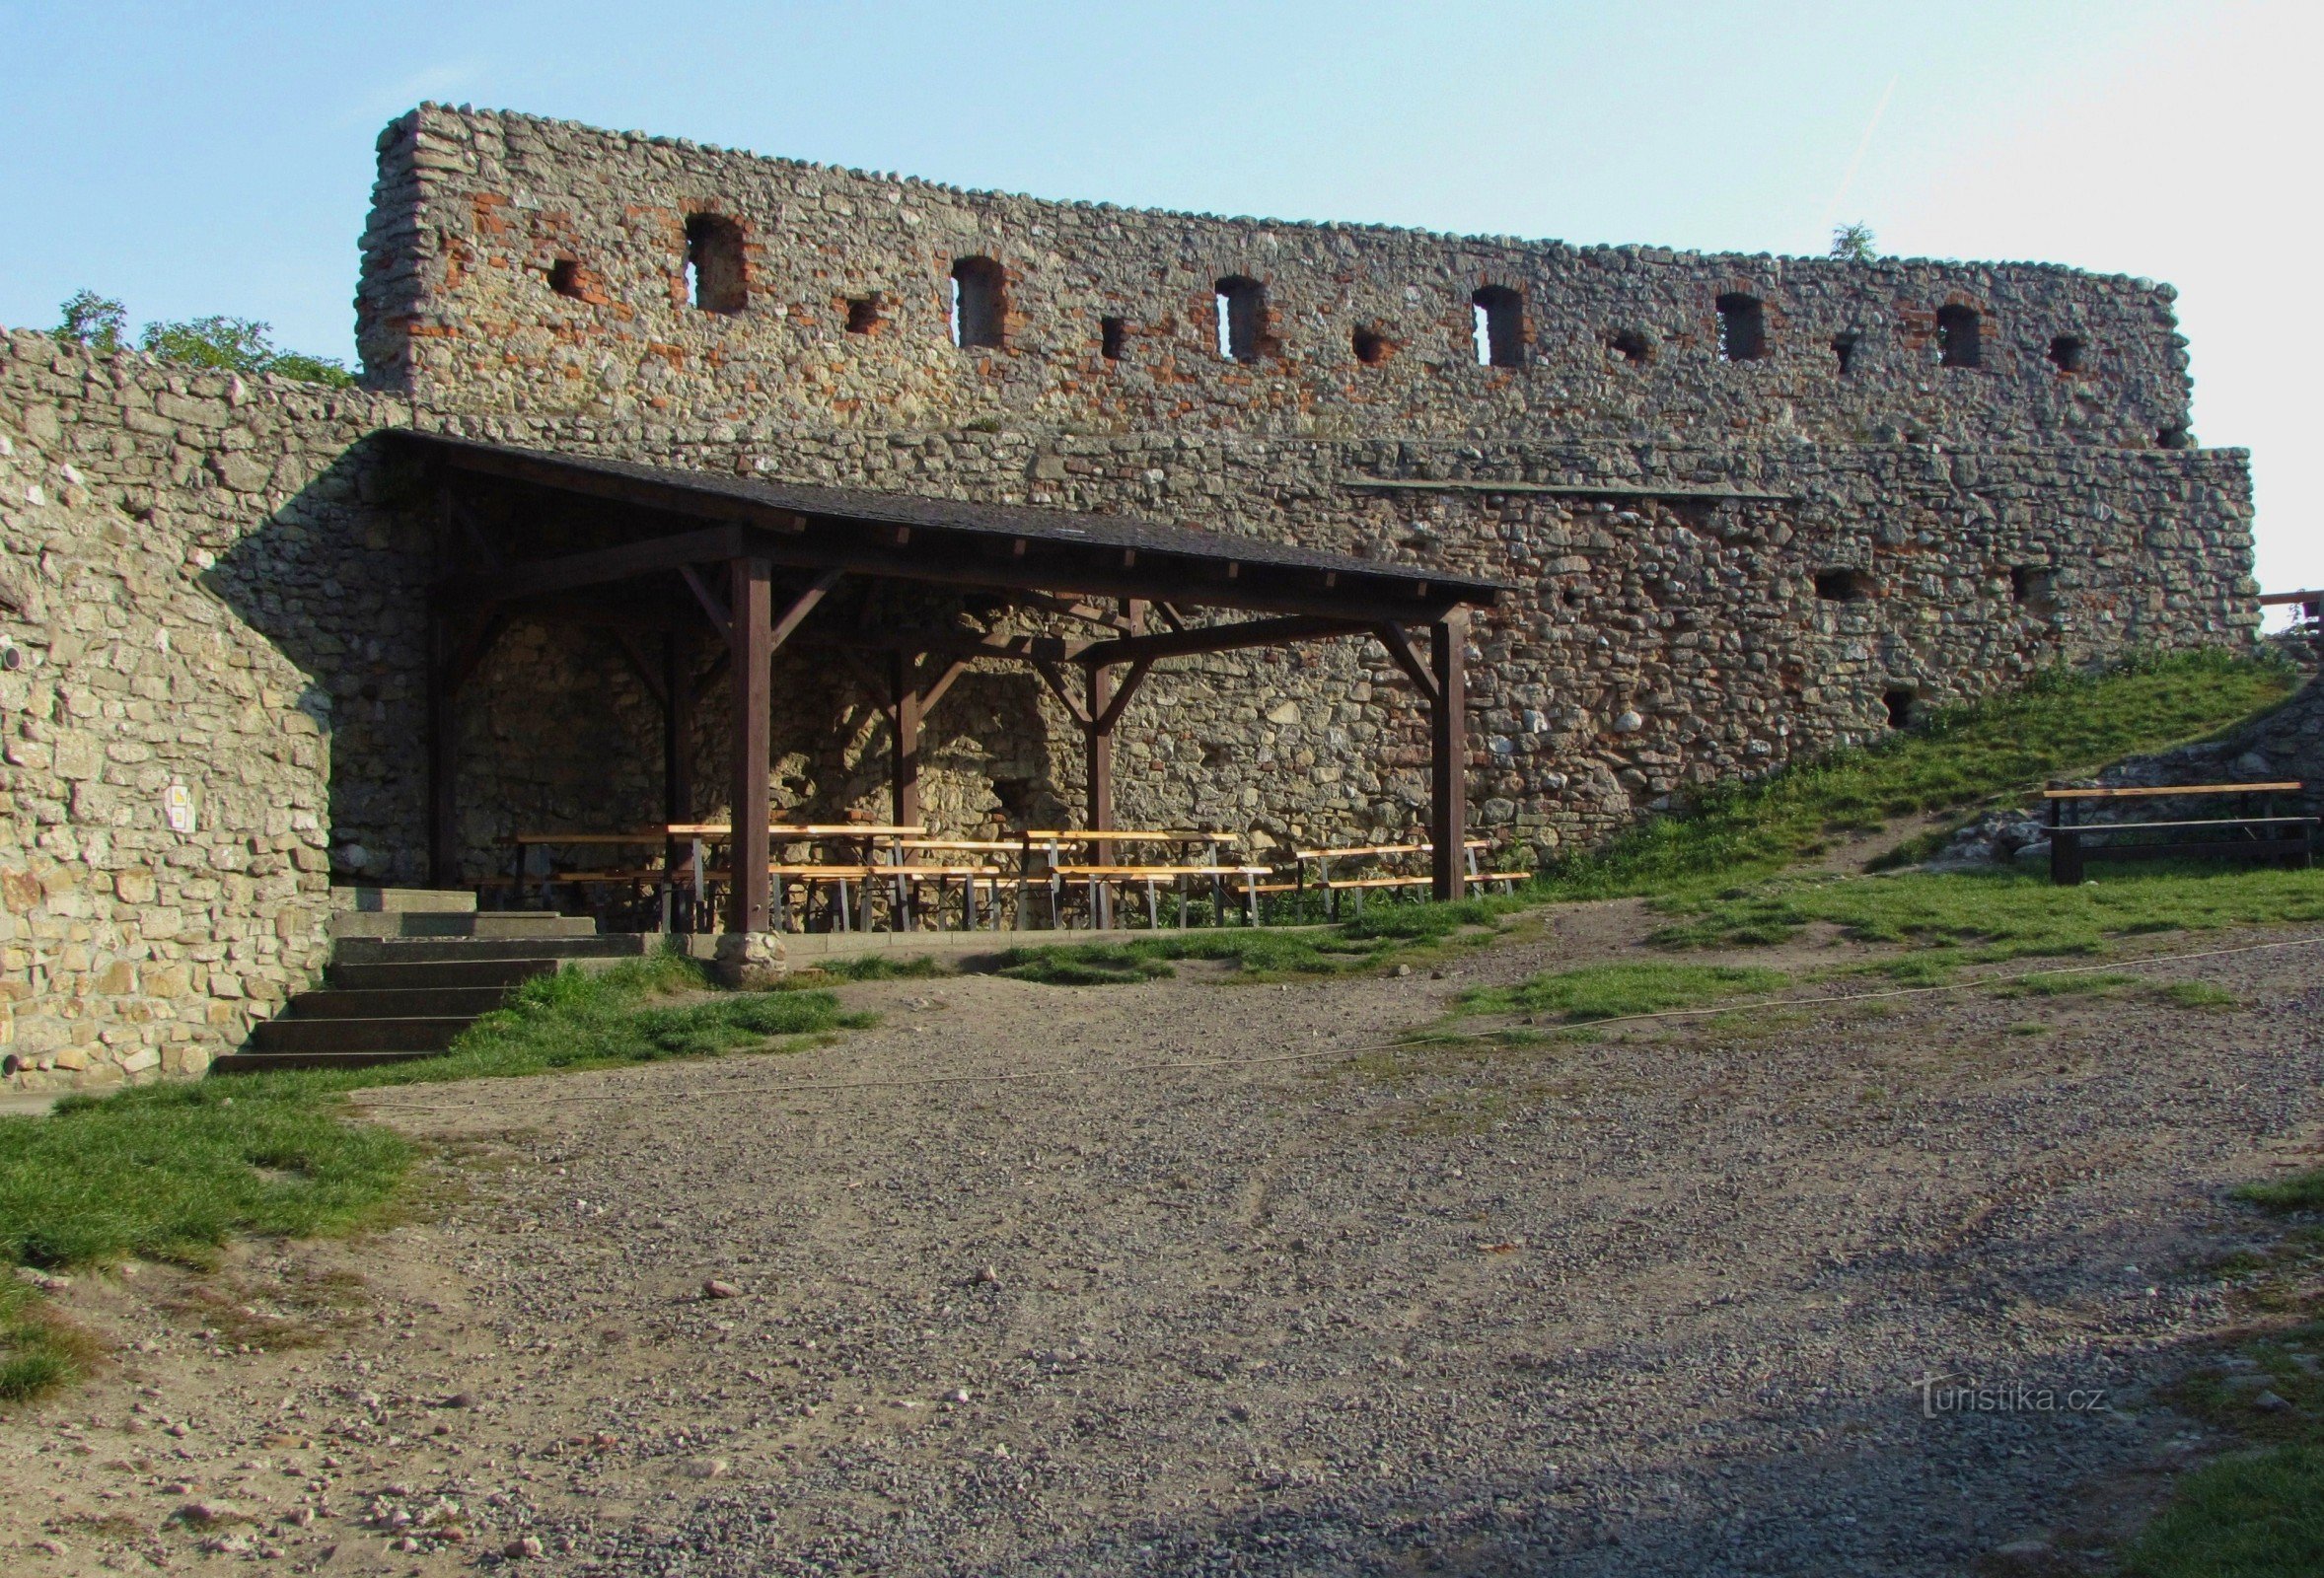 Castelul gotic - Starý Jičín